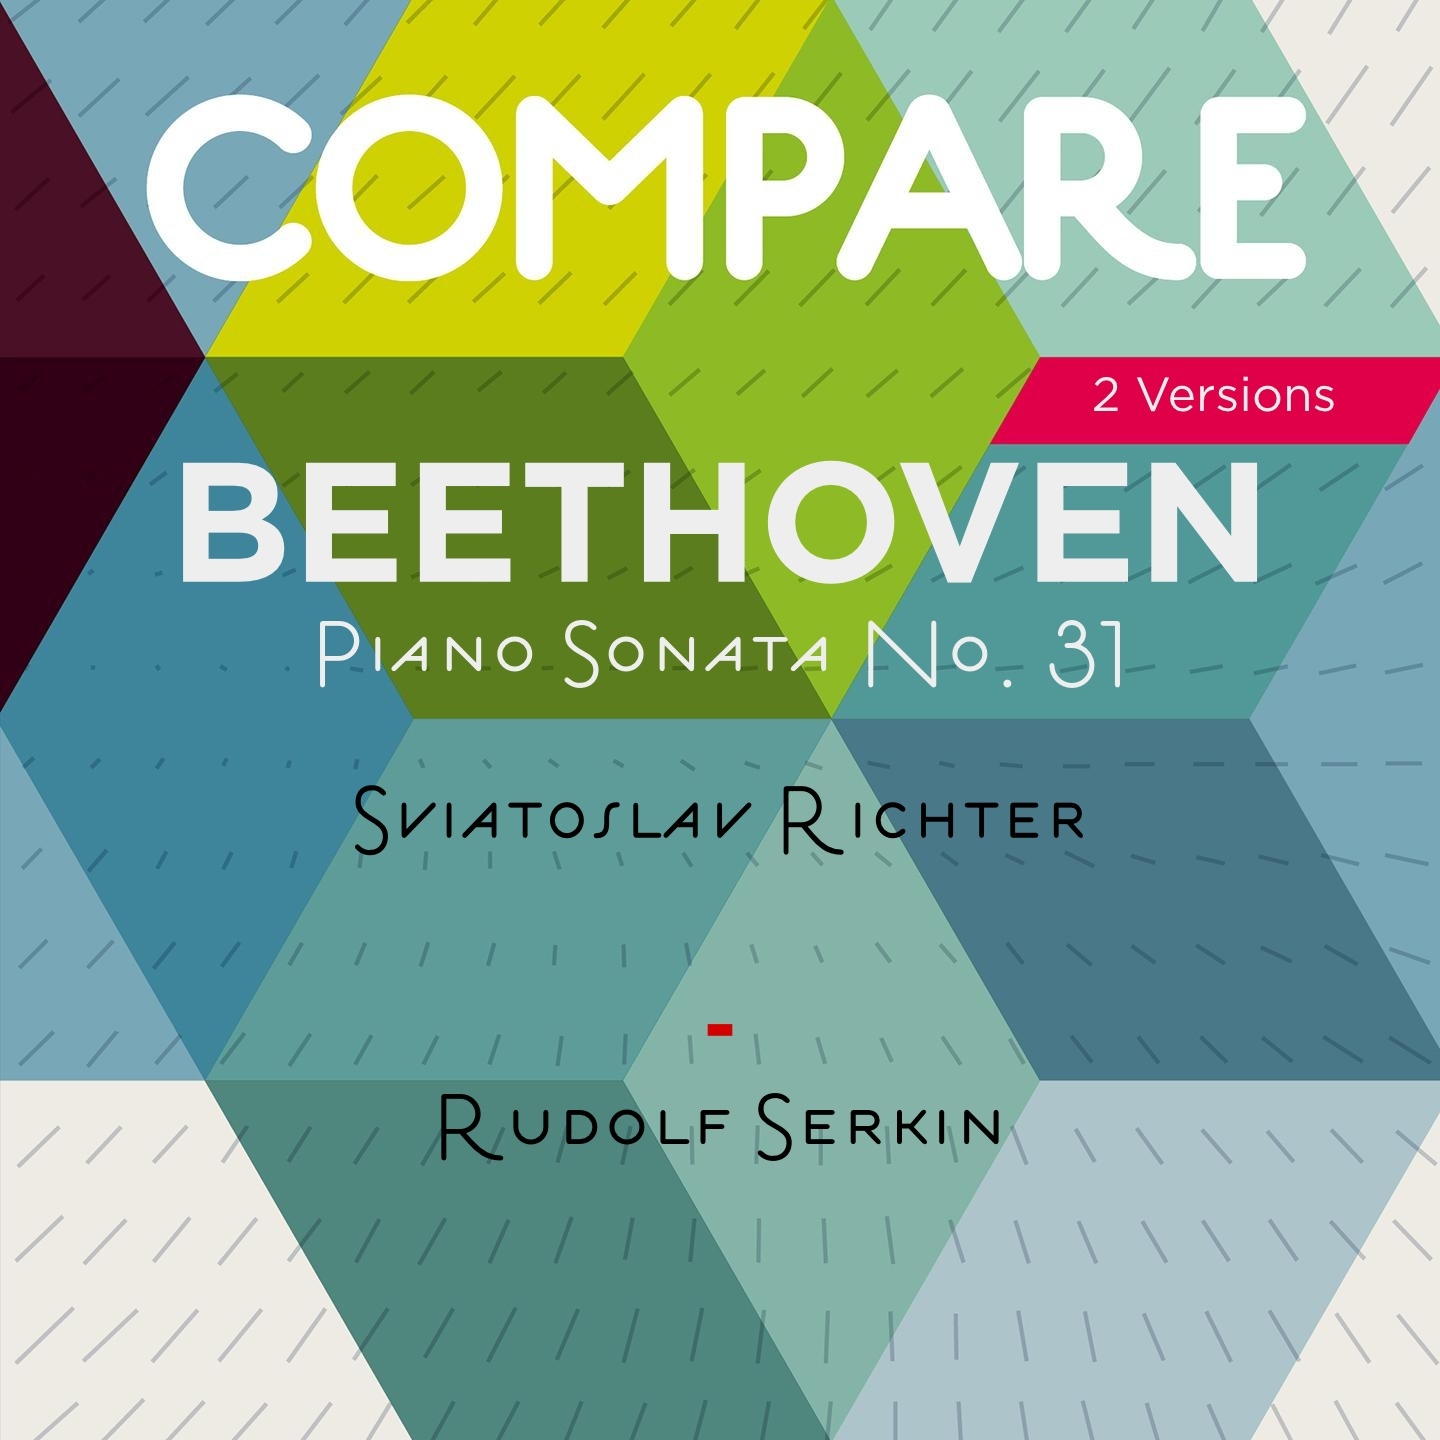 Beethoven: Piano Sonata No. 31, Sviatoslav Richter vs. Rudolf Serkin